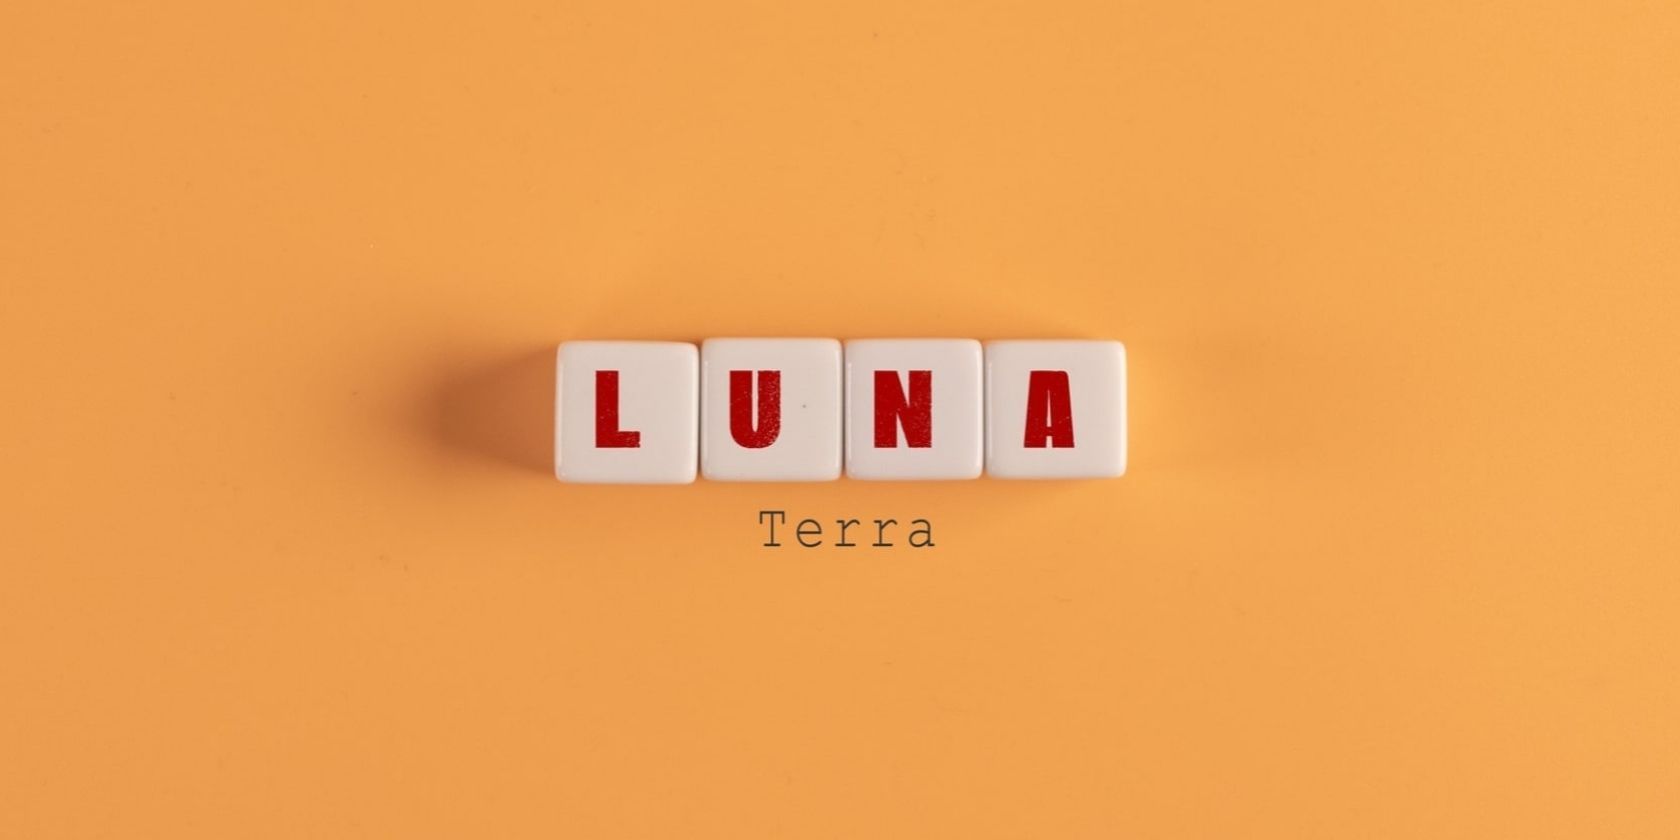 luna spelled in letter blocks on orange background